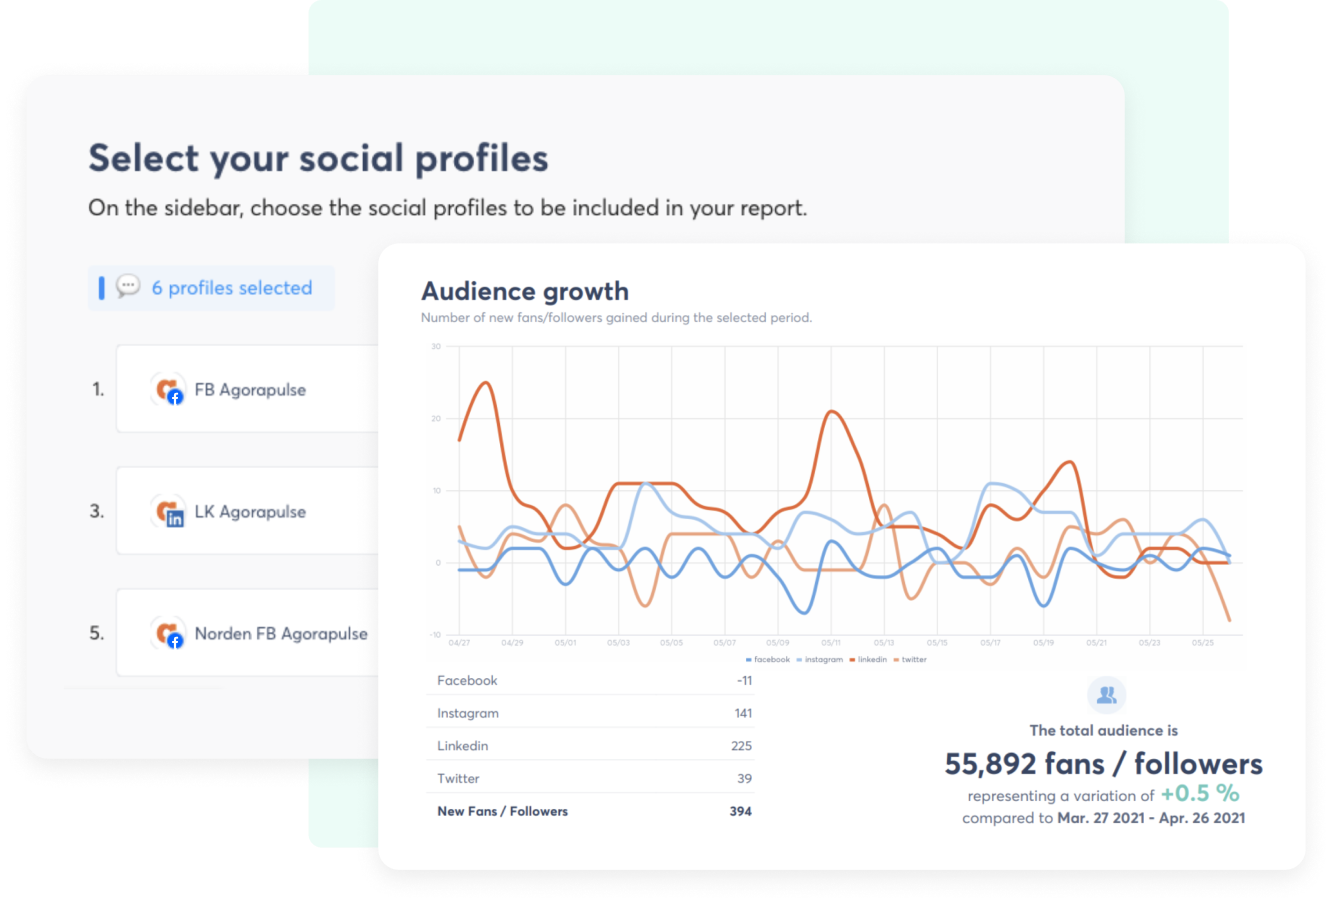 Panel de análisis que muestra la selección de seis perfiles de redes sociales para un informe y un gráfico de líneas del crecimiento de la audiencia en Facebook, Instagram, LinkedIn y X(Twitter), con métricas de audiencia total y nuevos seguidores mostrados.